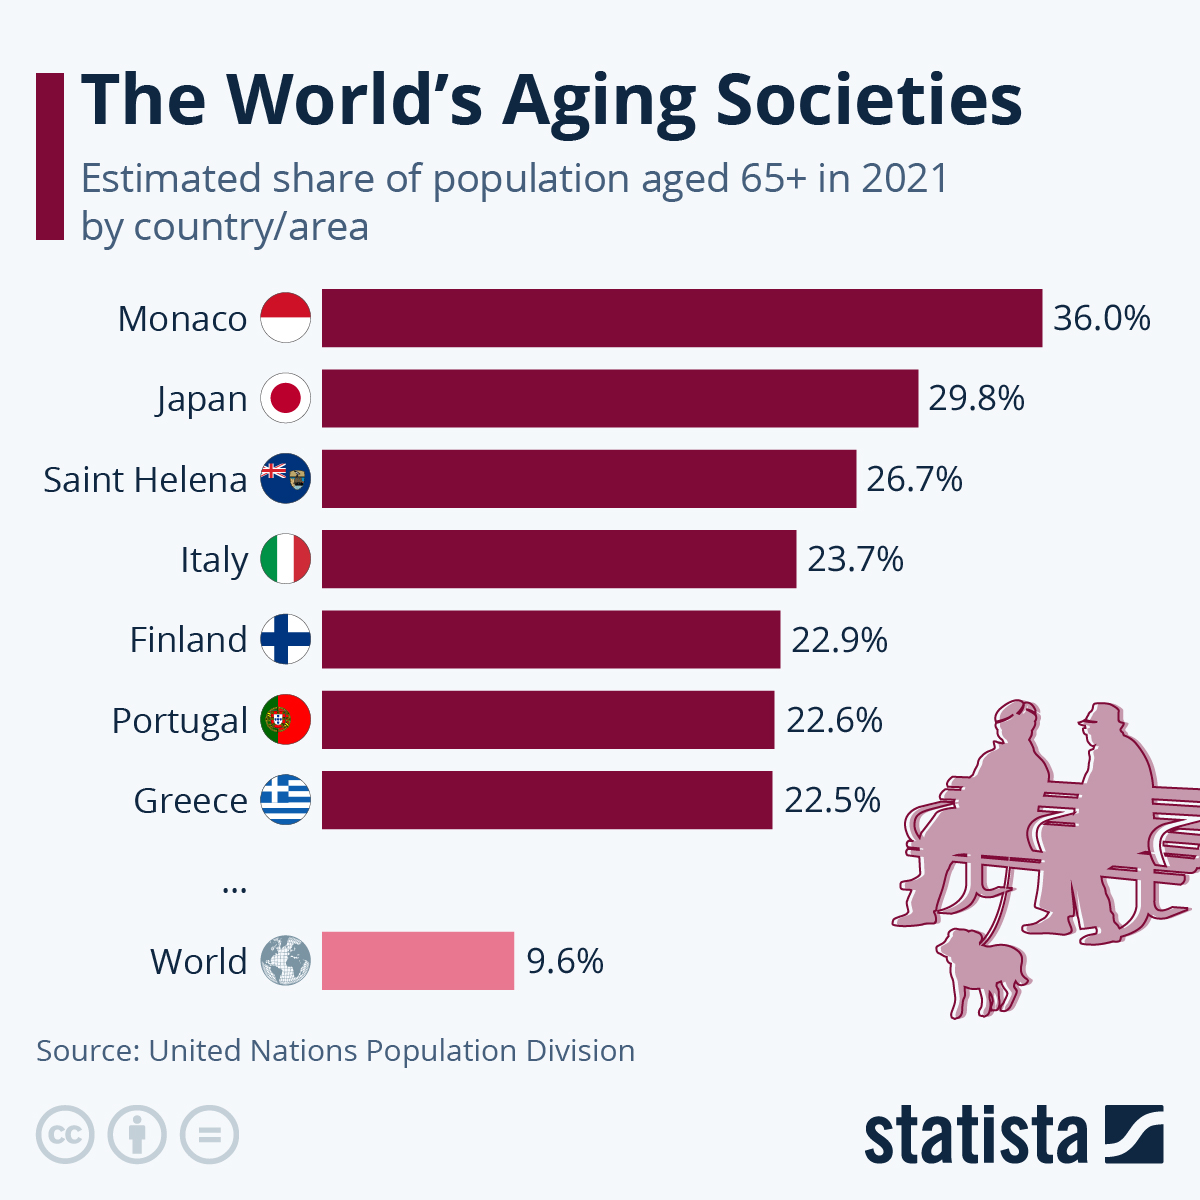 statista-infographic-aging-societies